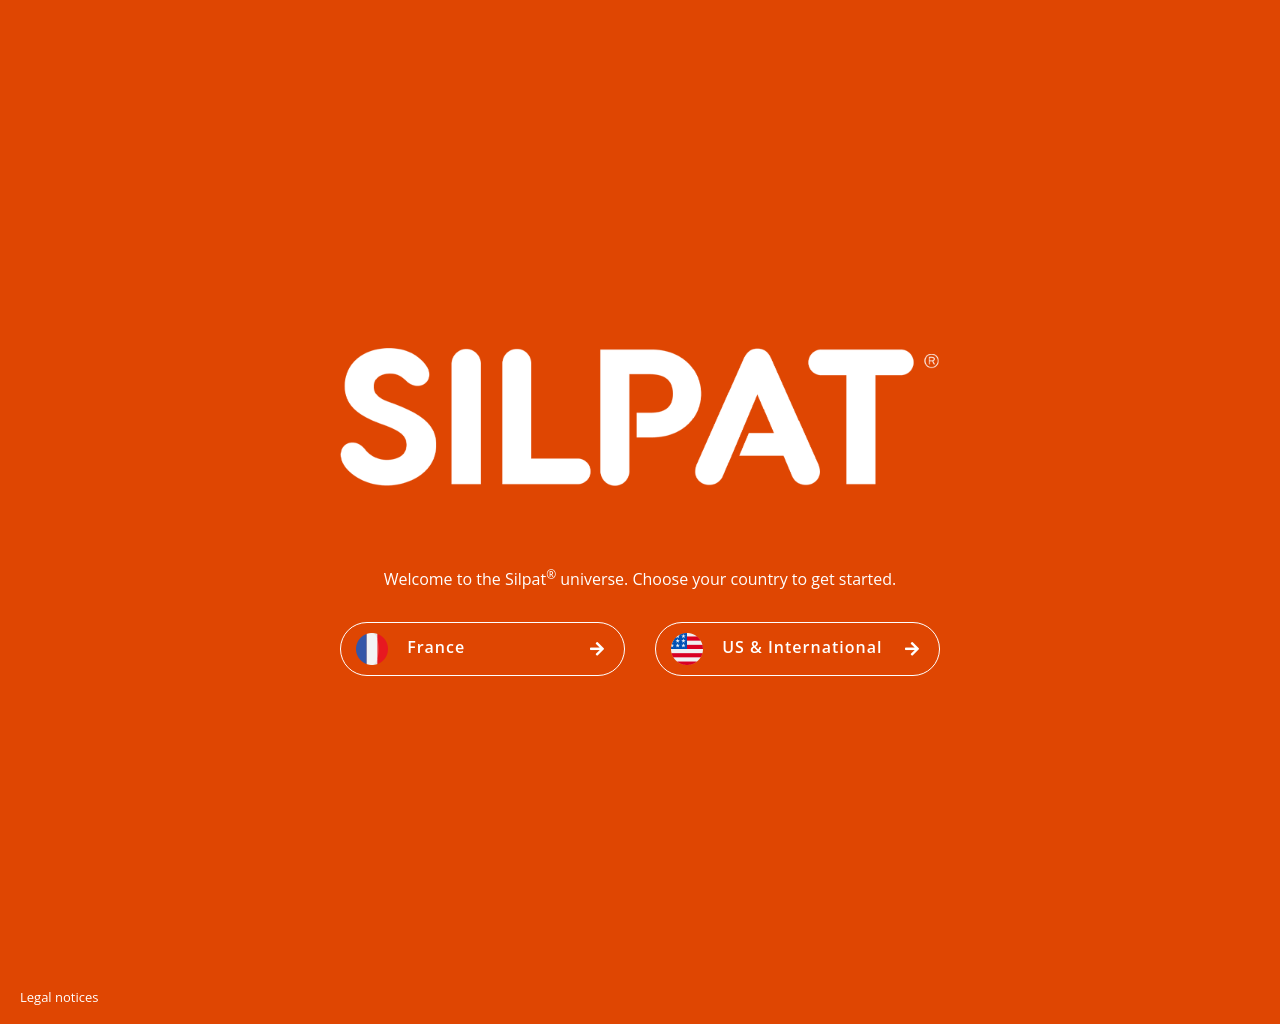 silpat.com